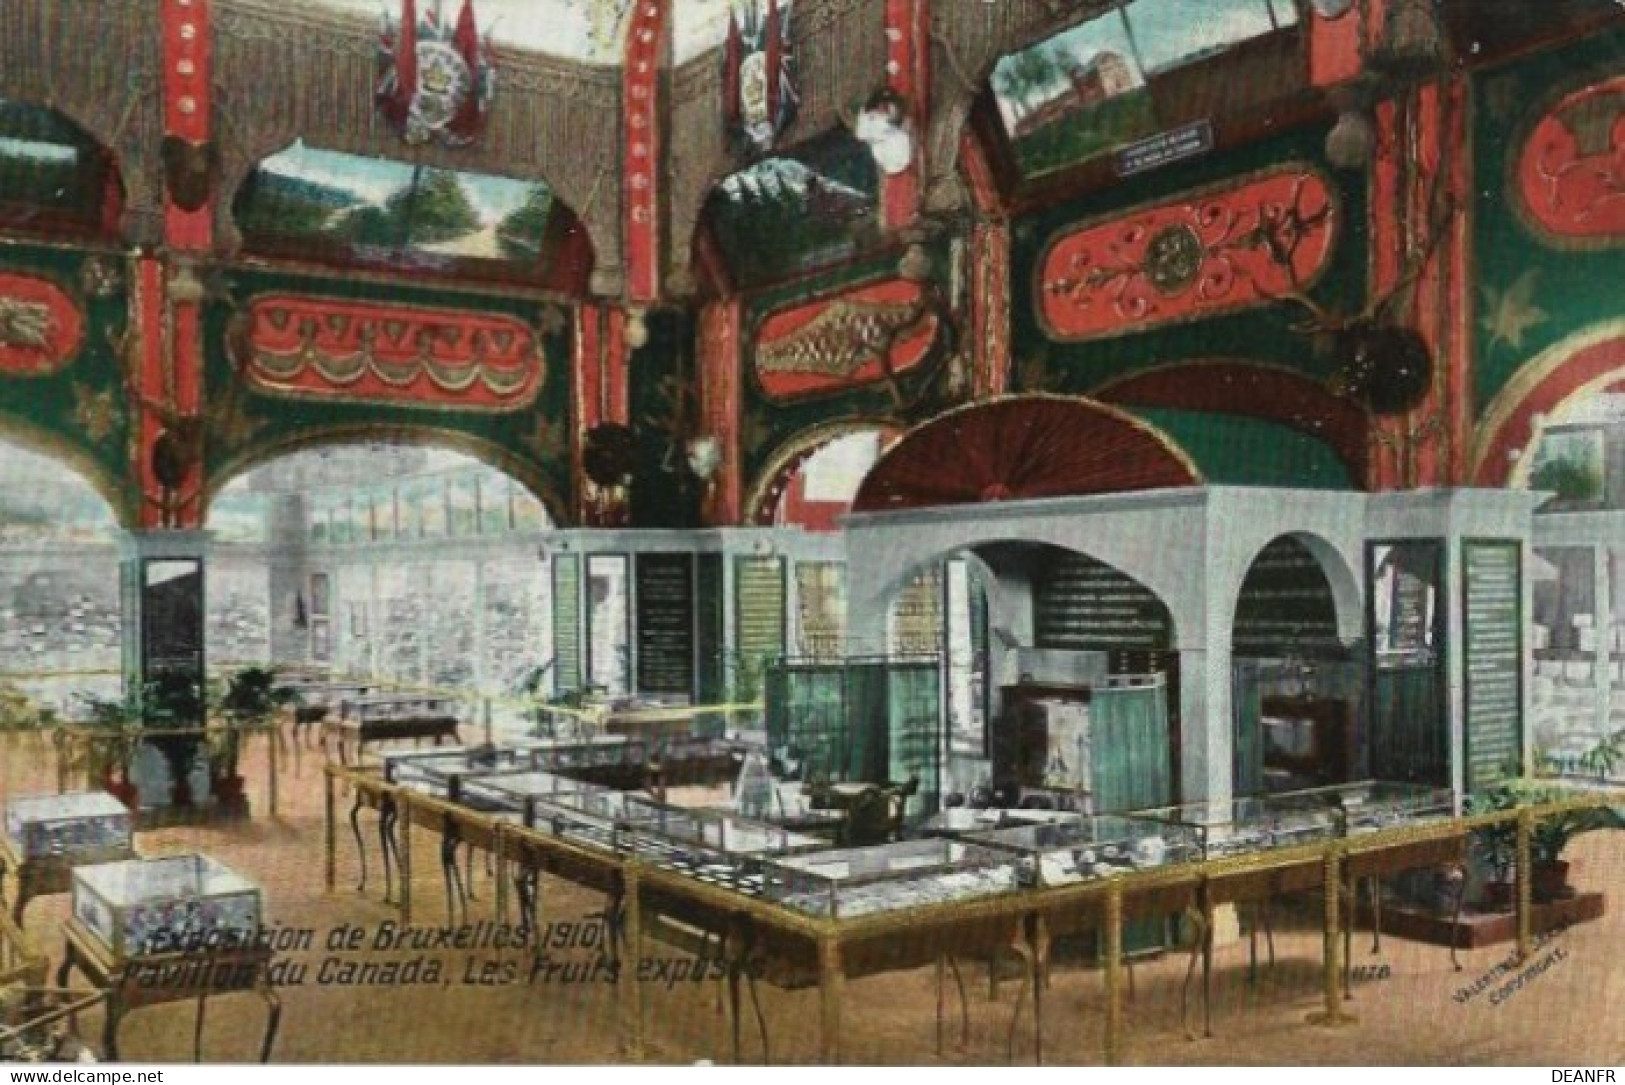 EXPOSITION De BRUXELLES 1910 : Pavillon Canada,Les Fruits Exposés. Carte Impeccable. - Wereldtentoonstellingen